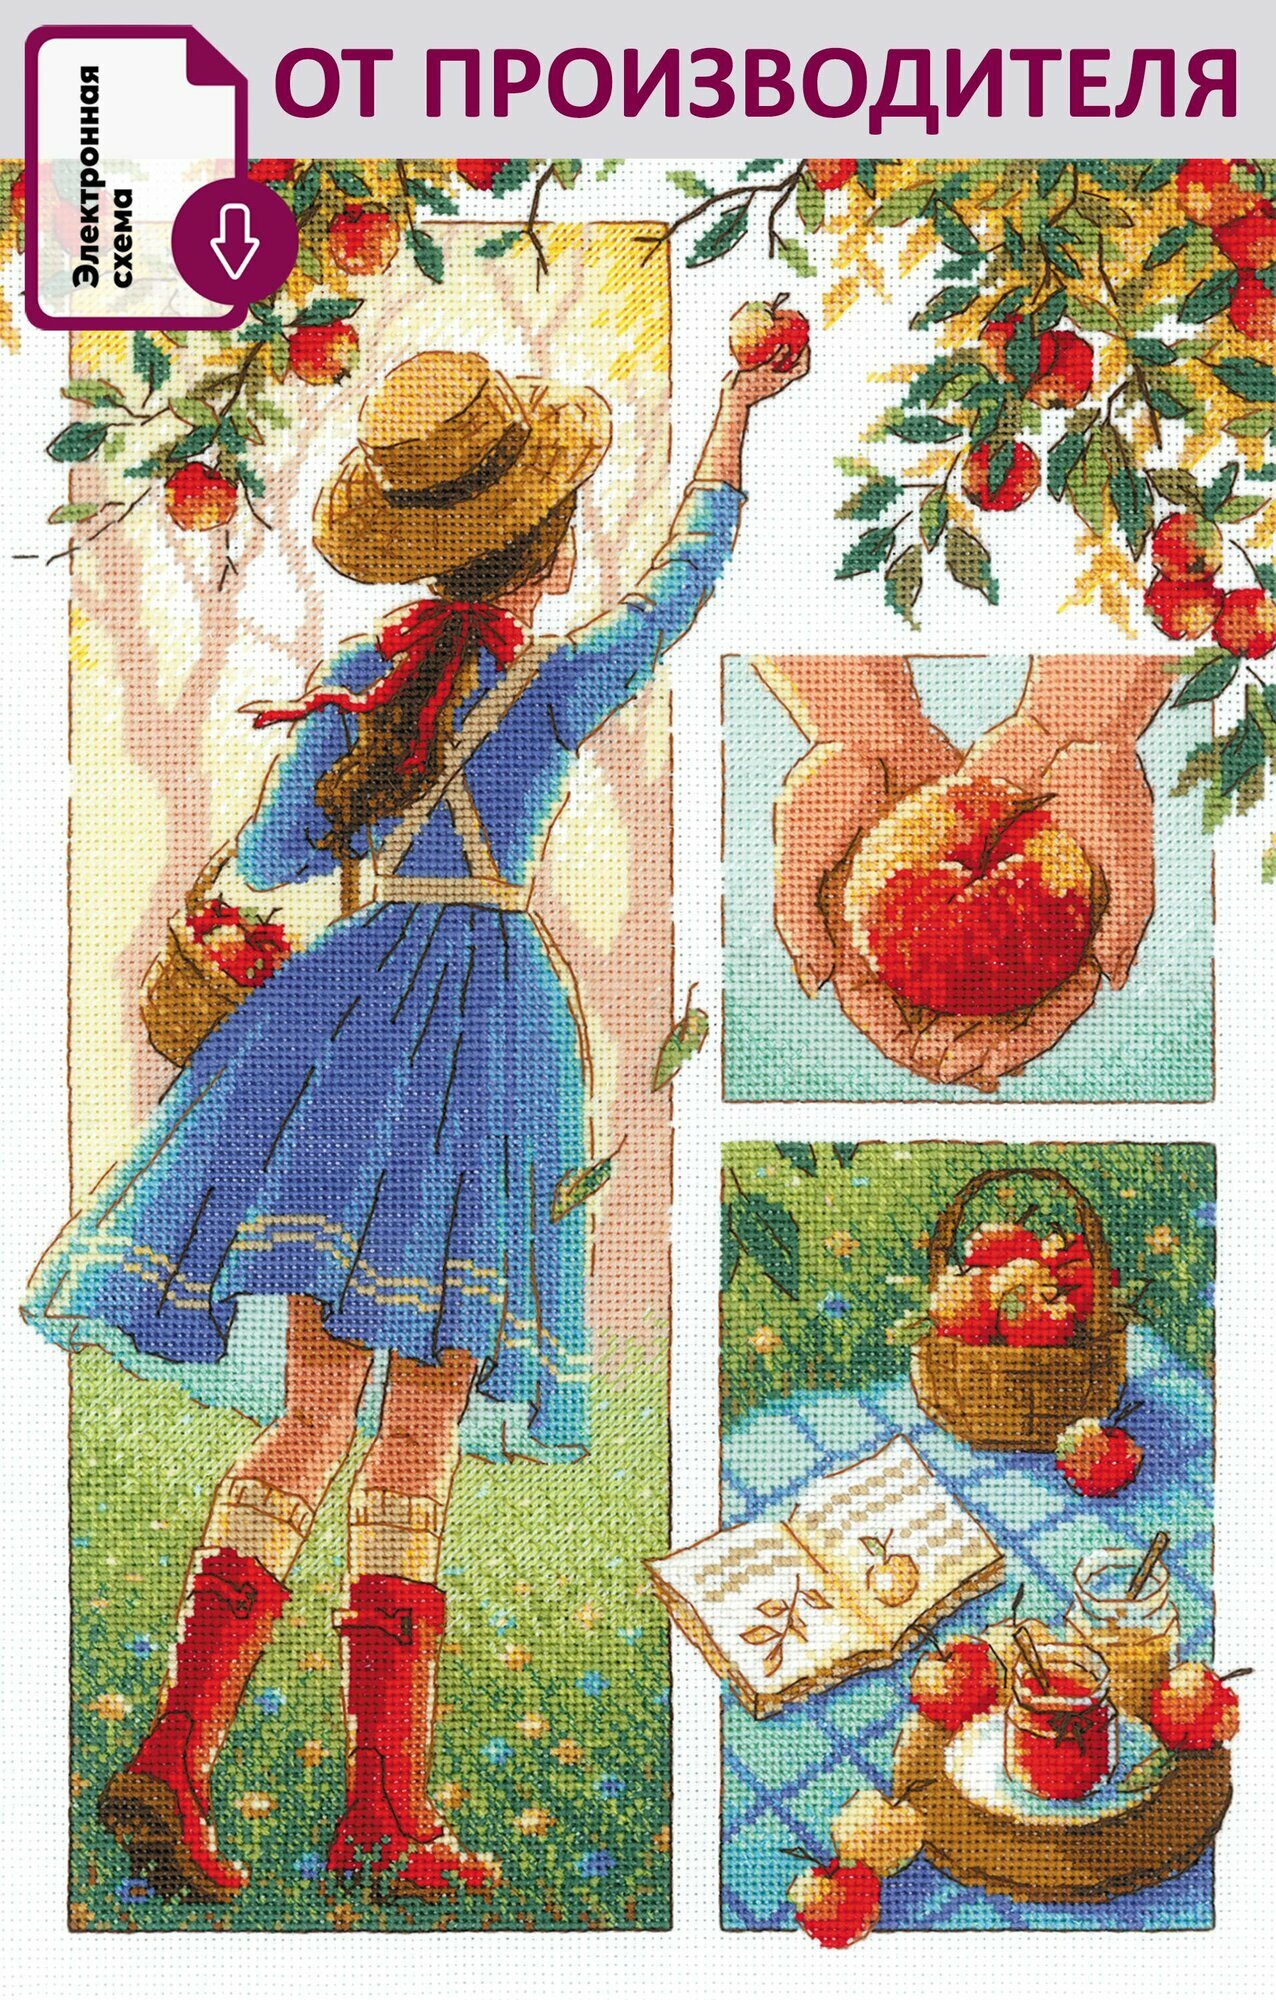 Набор для вышивания крестом Риолис, вышивка крестиком "Яблочный день", 21*30см, 2201